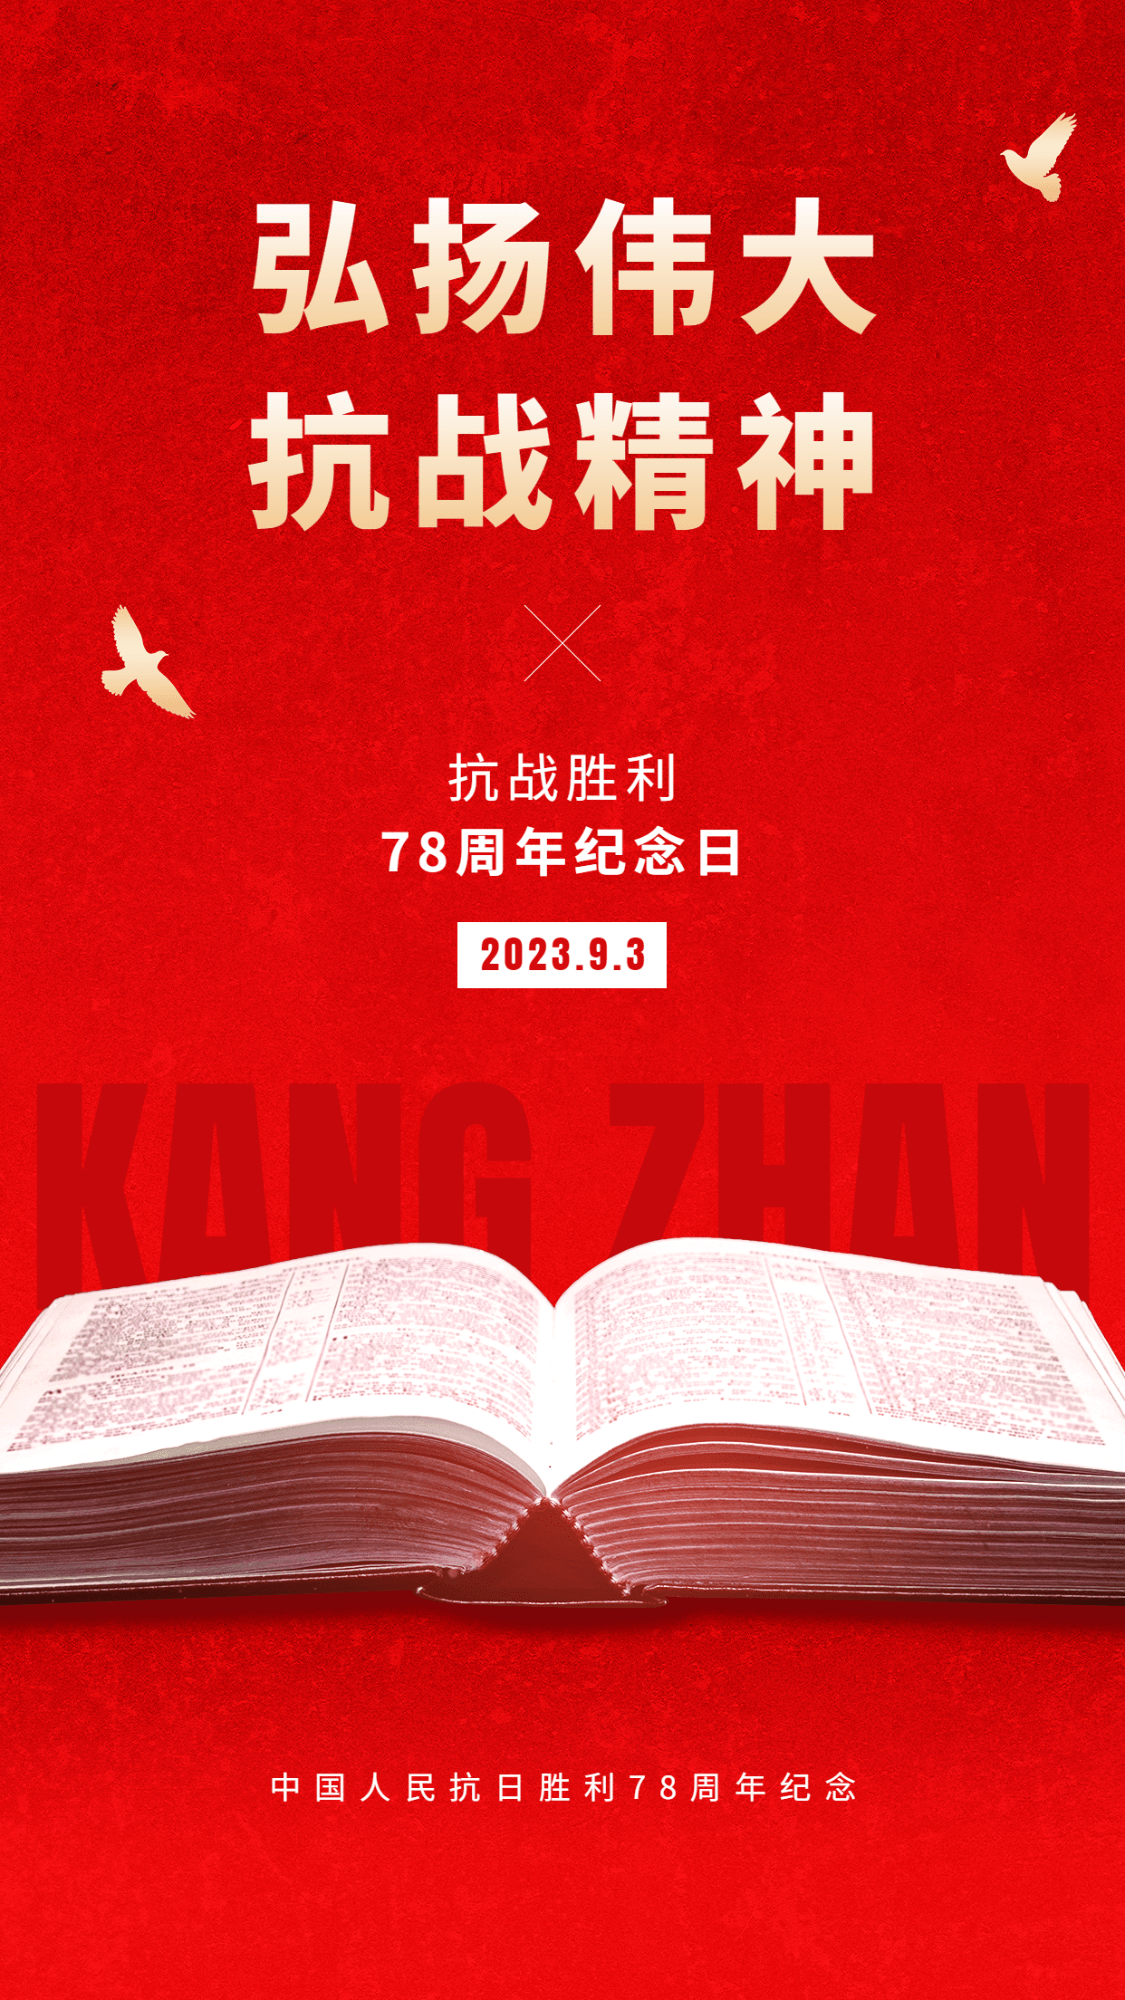 中国抗战胜利纪念日周年节日祝福插画手机海报预览效果